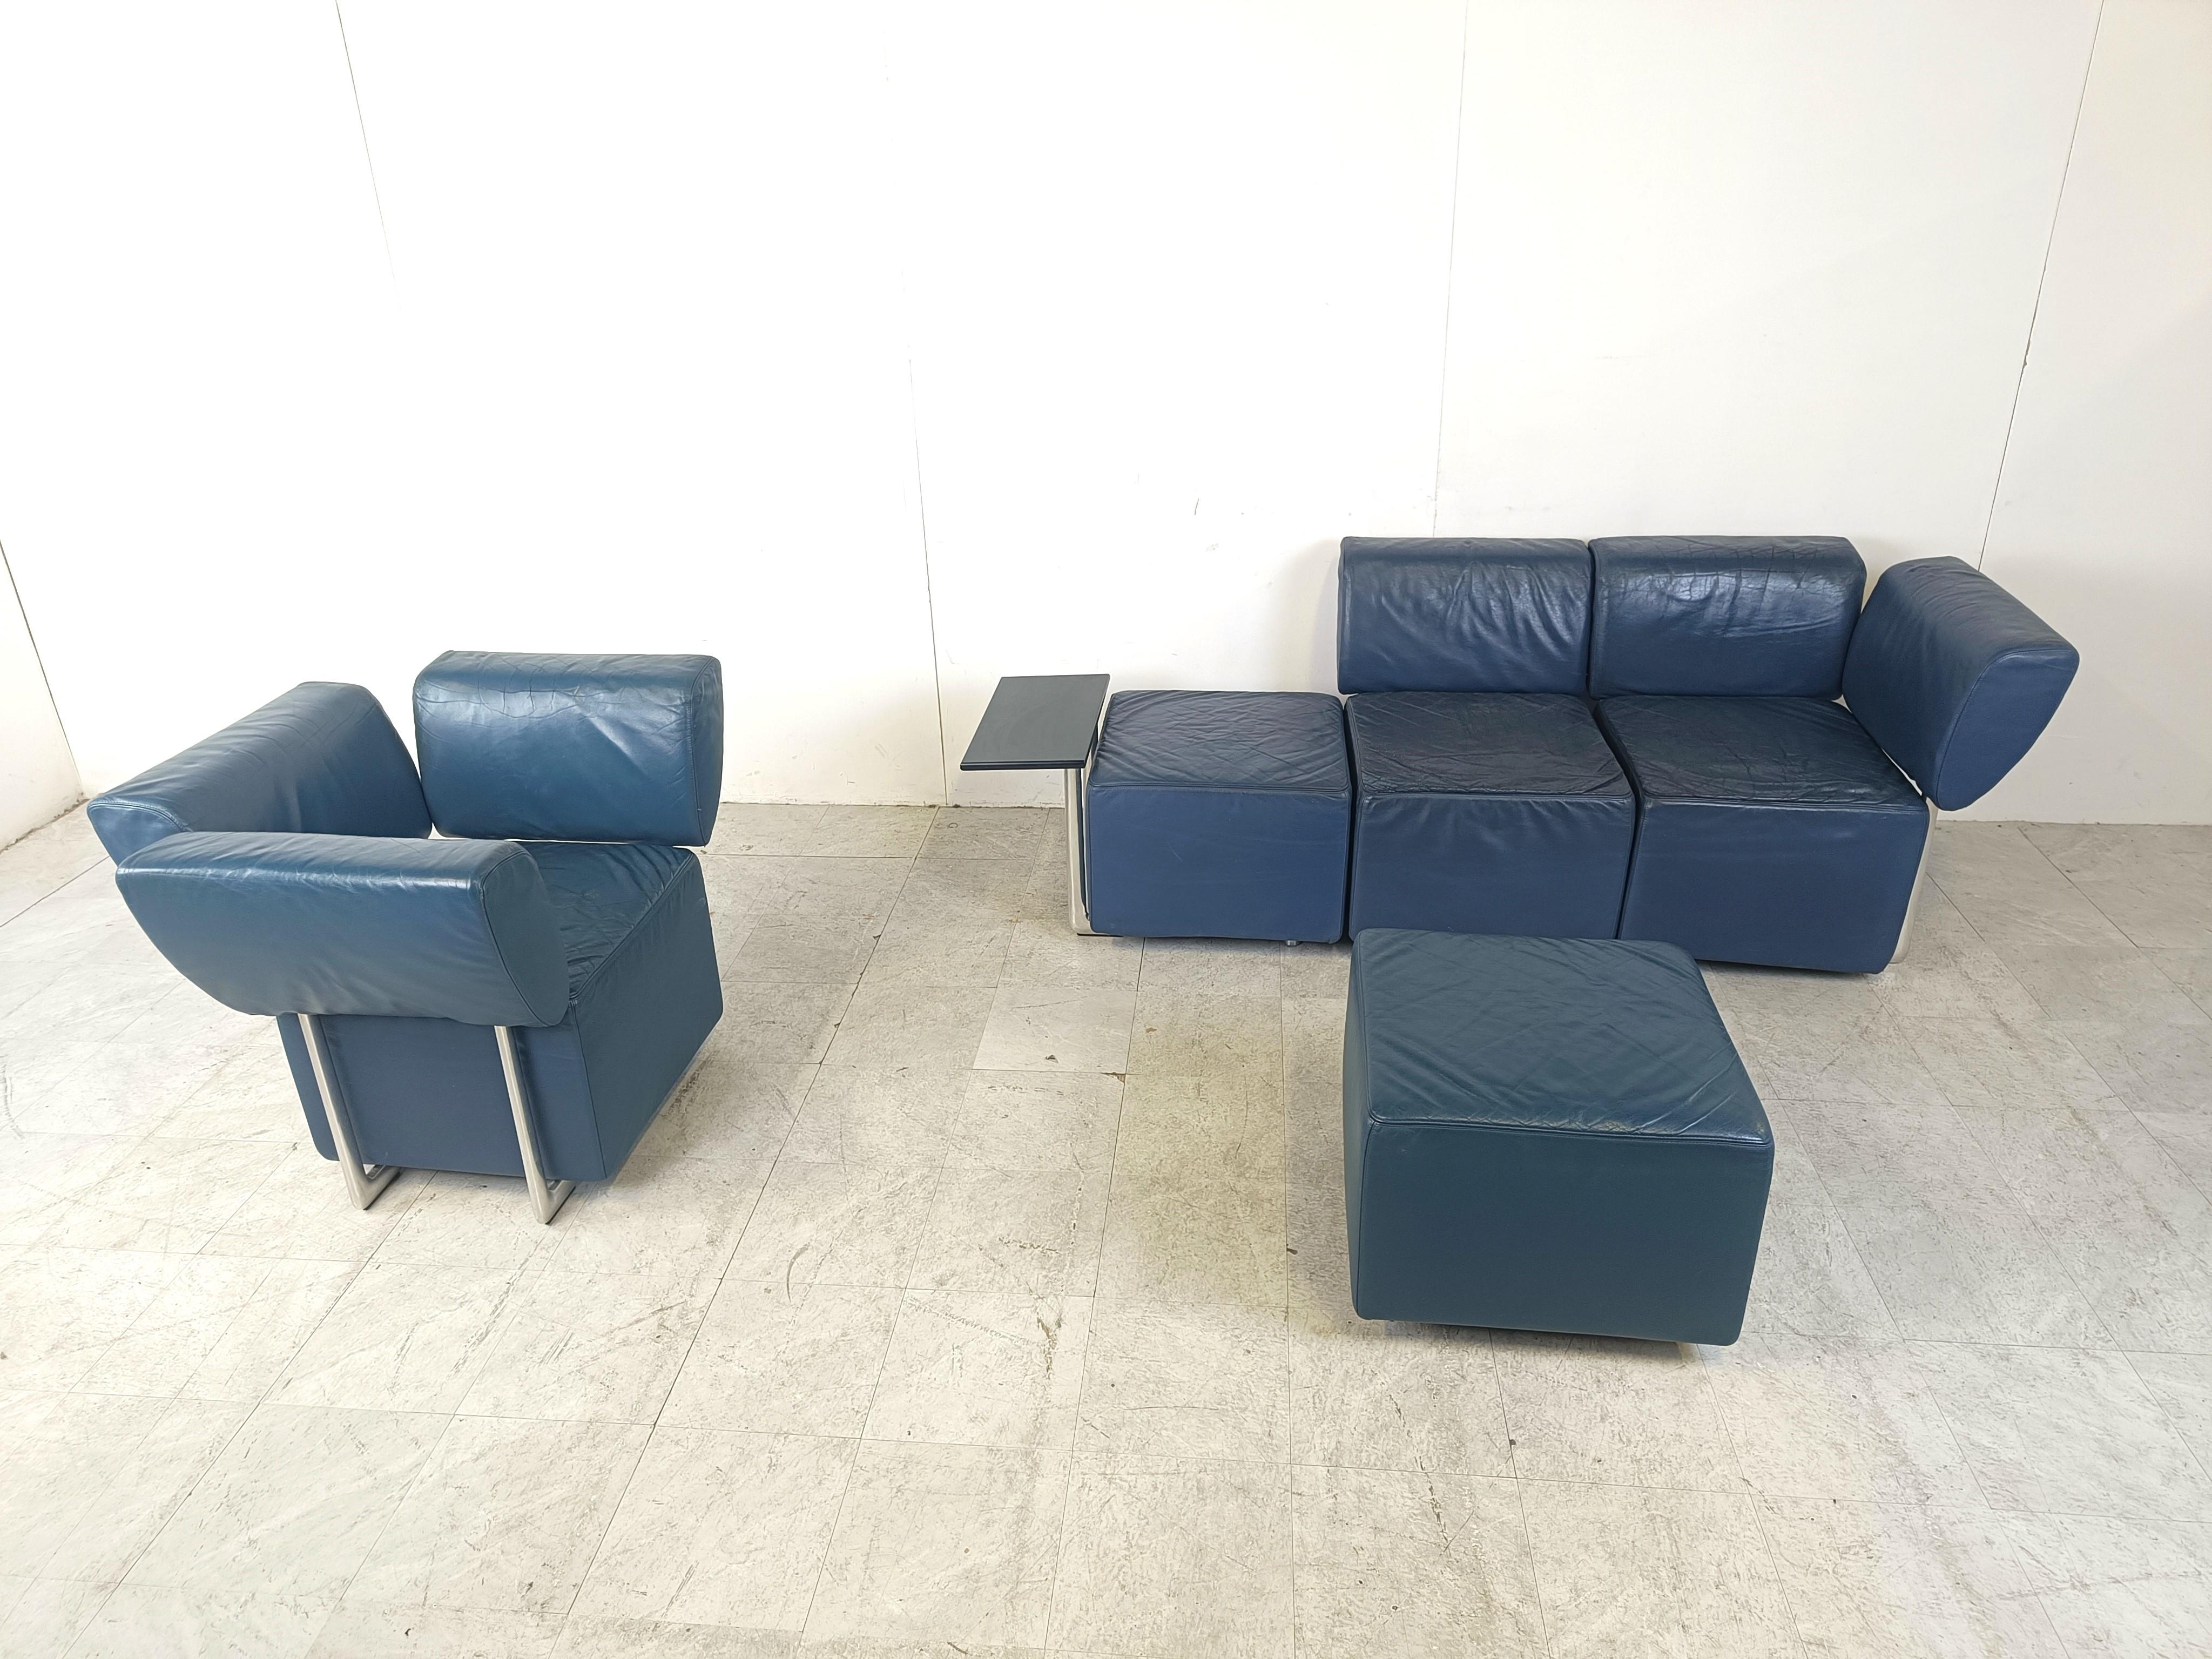 Canapé design postmoderne 'Clou' de COR et conçu par Wulf Schneider. 

Bien conçu et rembourré avec du cuir bleu de haute qualité sur des bases chromées.

Le siège trois places est équipé d'une petite table.

L'ensemble est entièrement